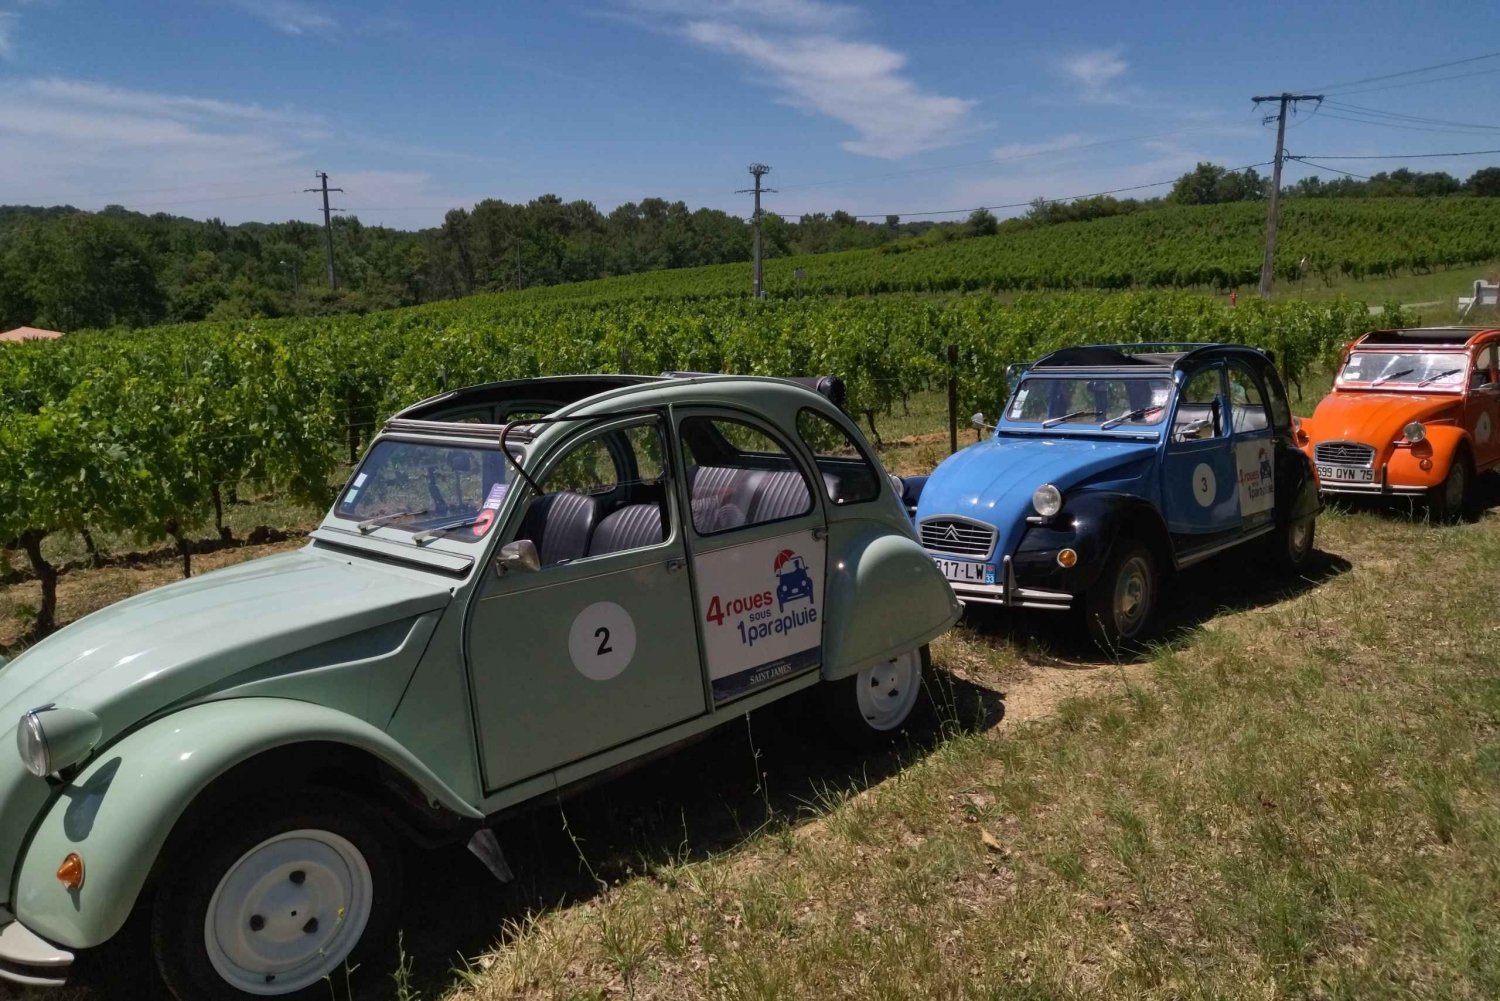 Saint-Émilion : Citroën 2CV Private 1 Day Wine Tour